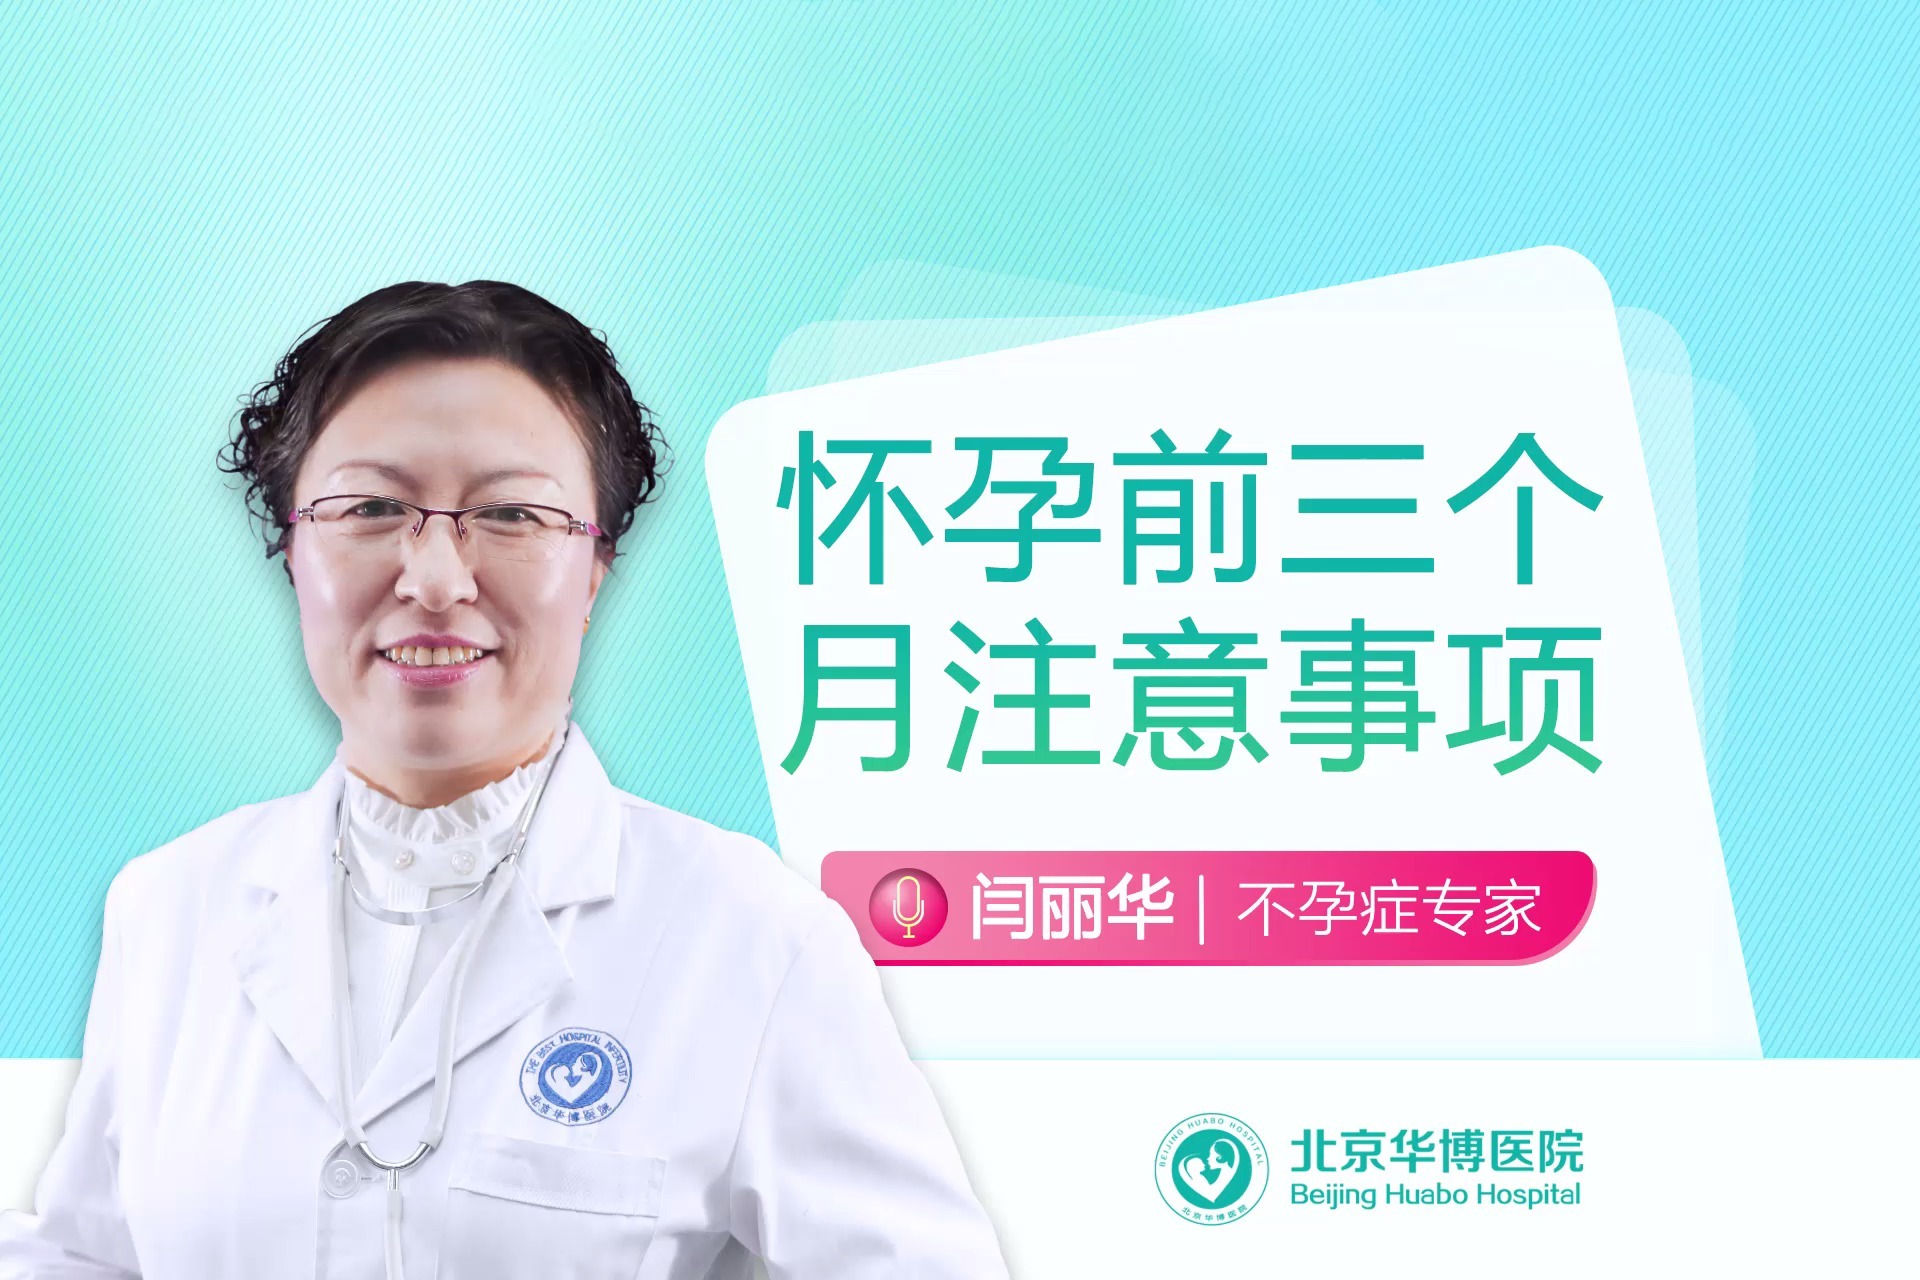 北京华博医院闫丽华:怀孕前三个月需要注意事项-北京不孕不育医院